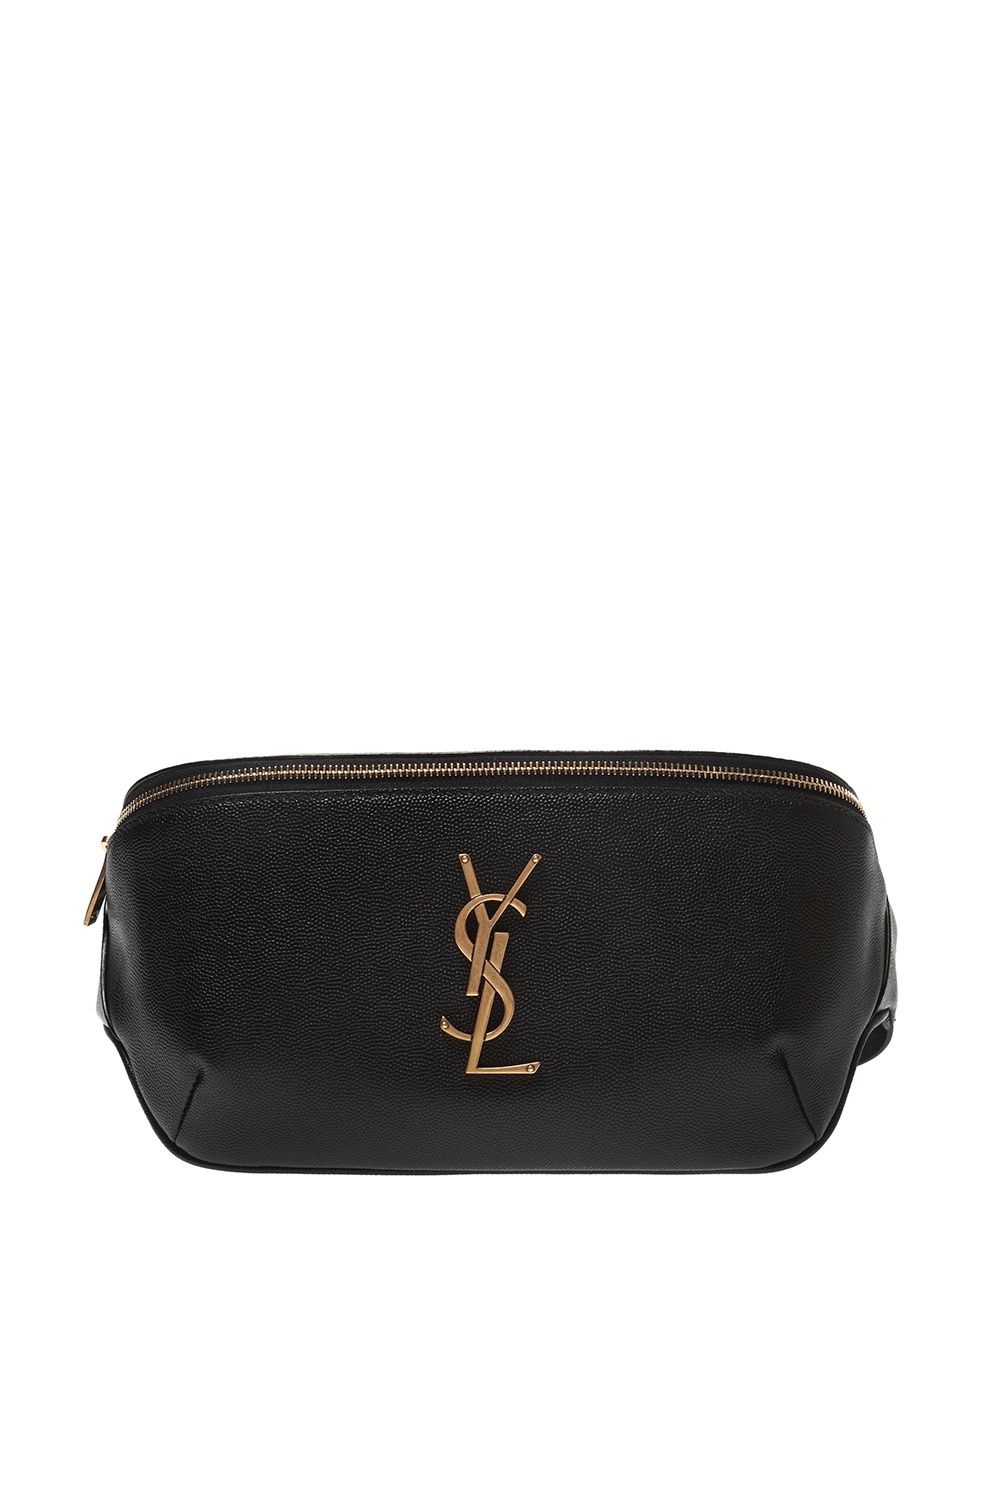 Saint Laurent Appliquéd belt bag, Women's Bags